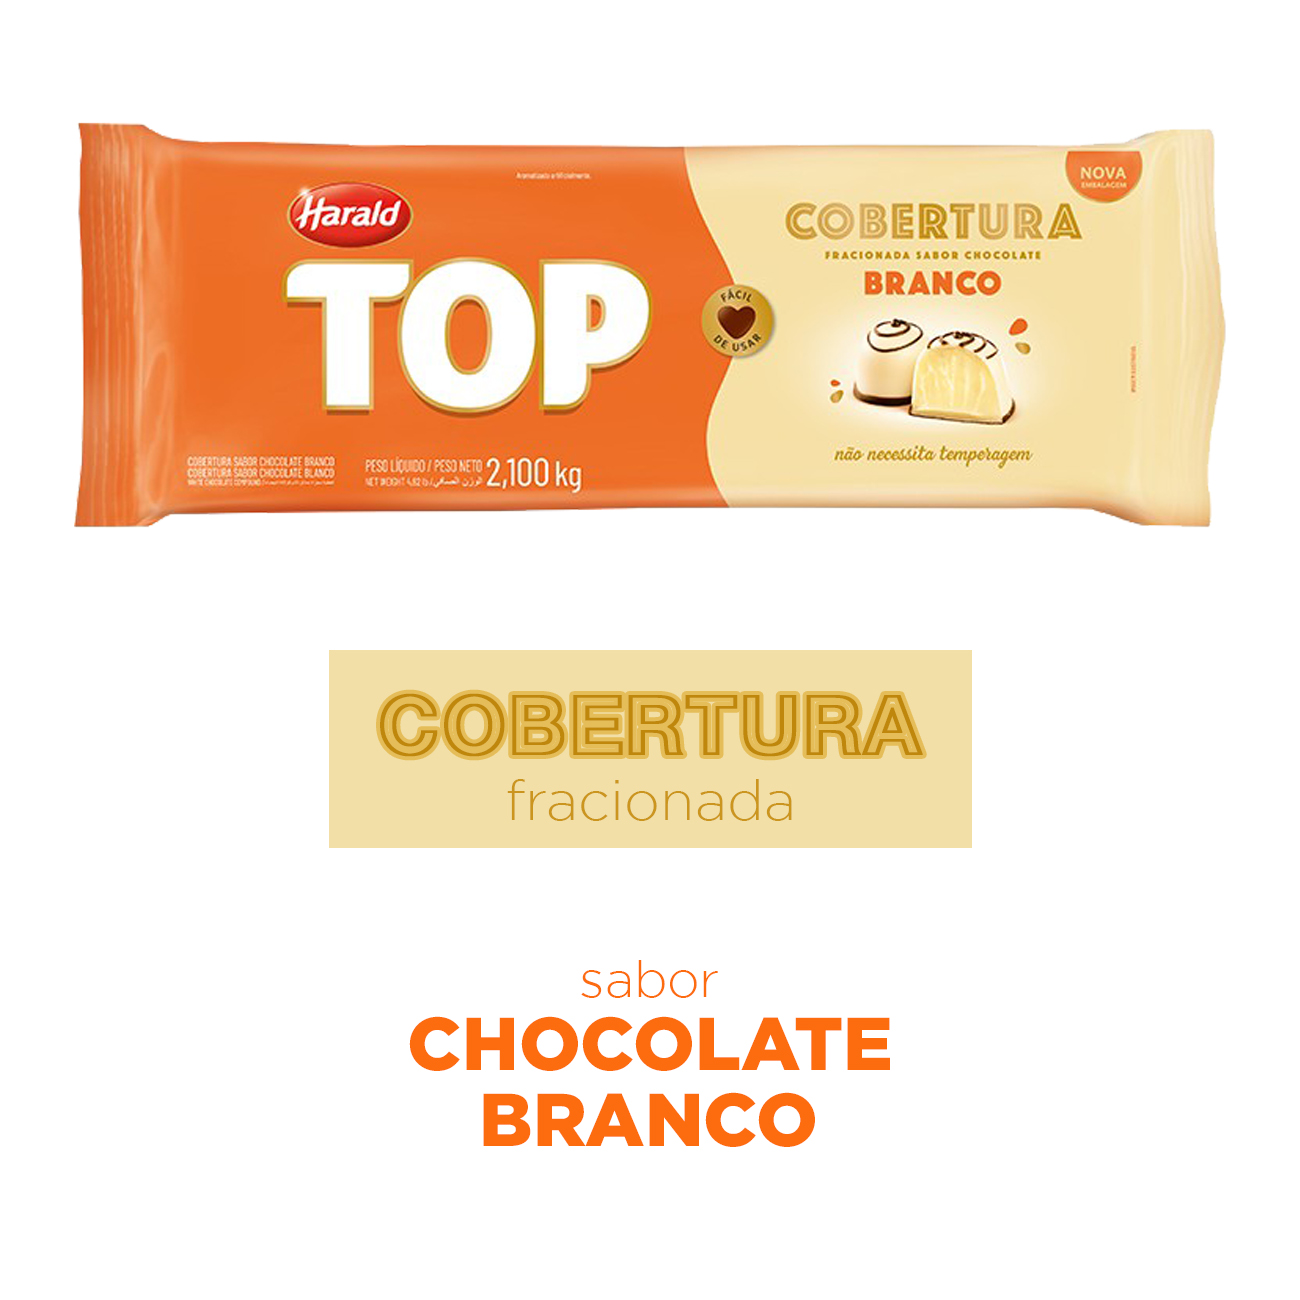 Cobertura de Chocolate em Barra Harald Top Branco 2,1kg